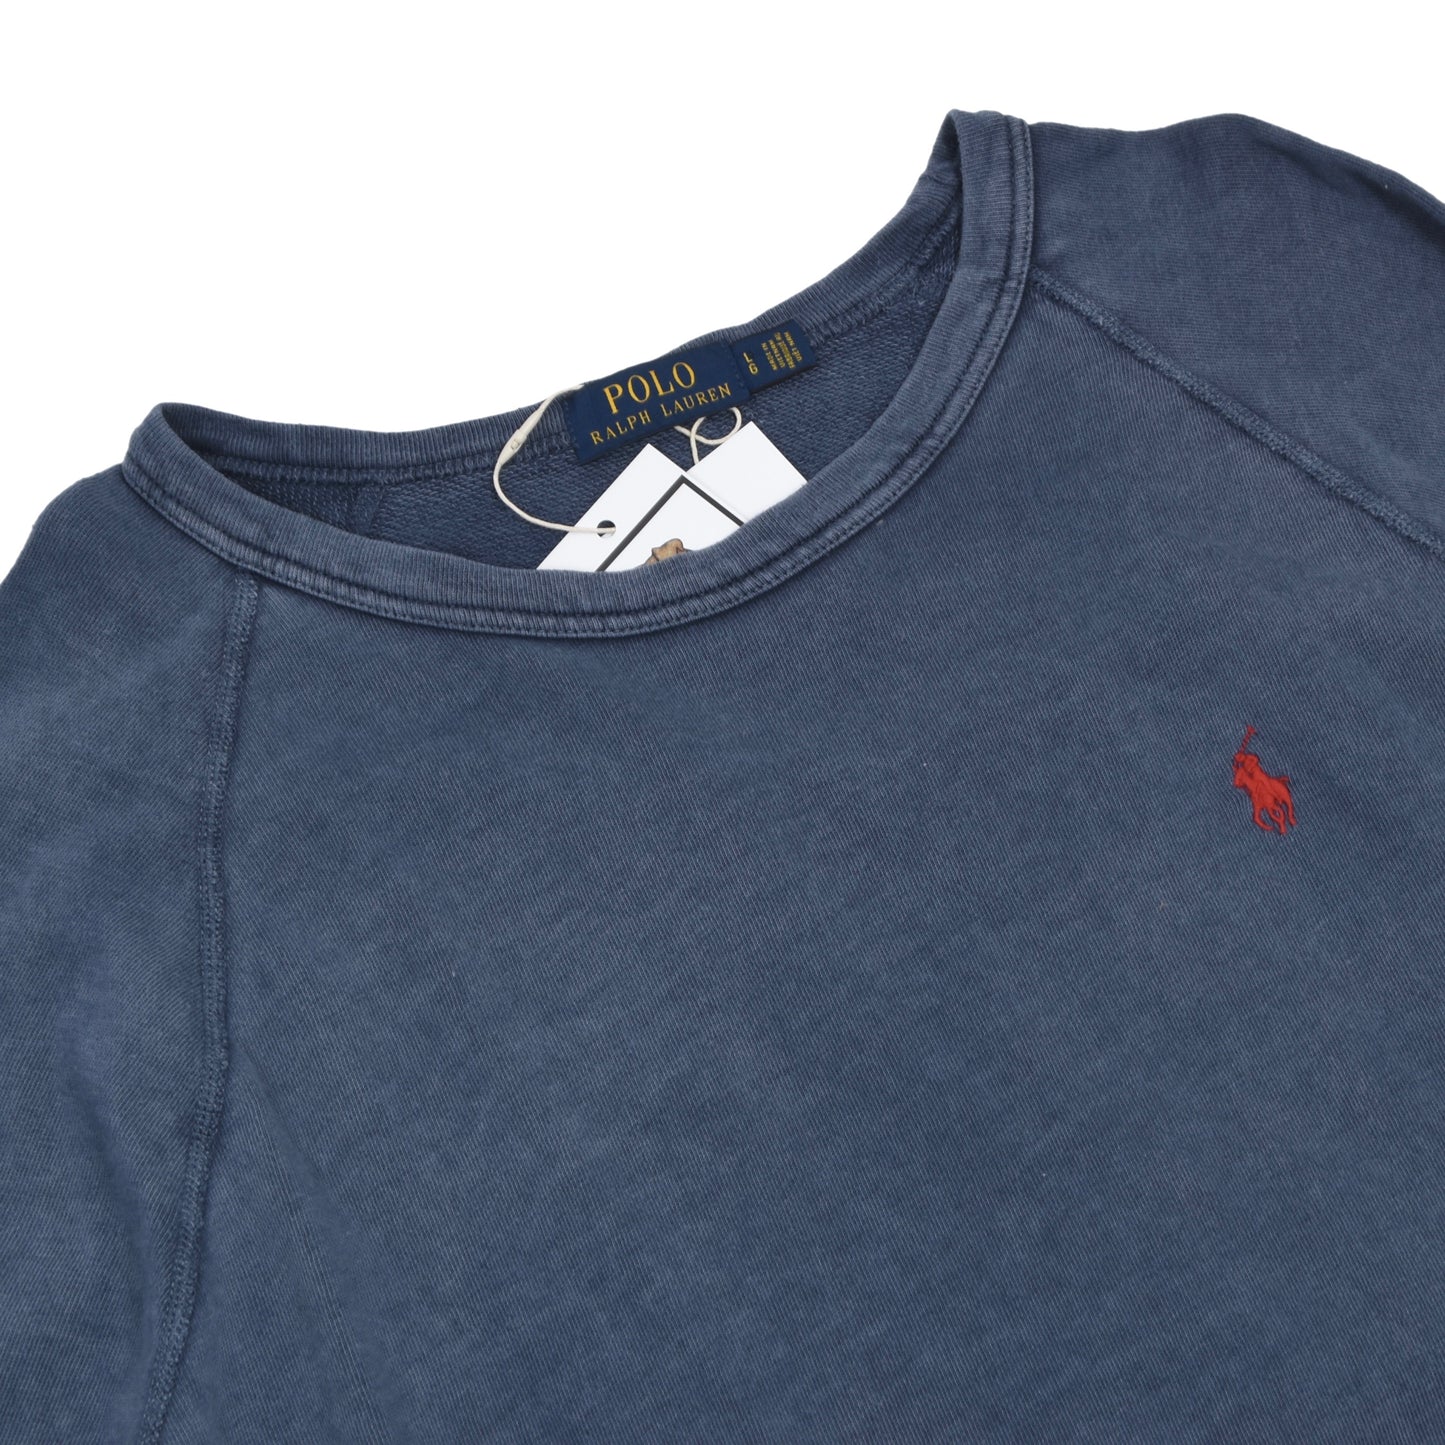 Polo Ralph Lauren Lightweight Sweatshirt Size L - Blue